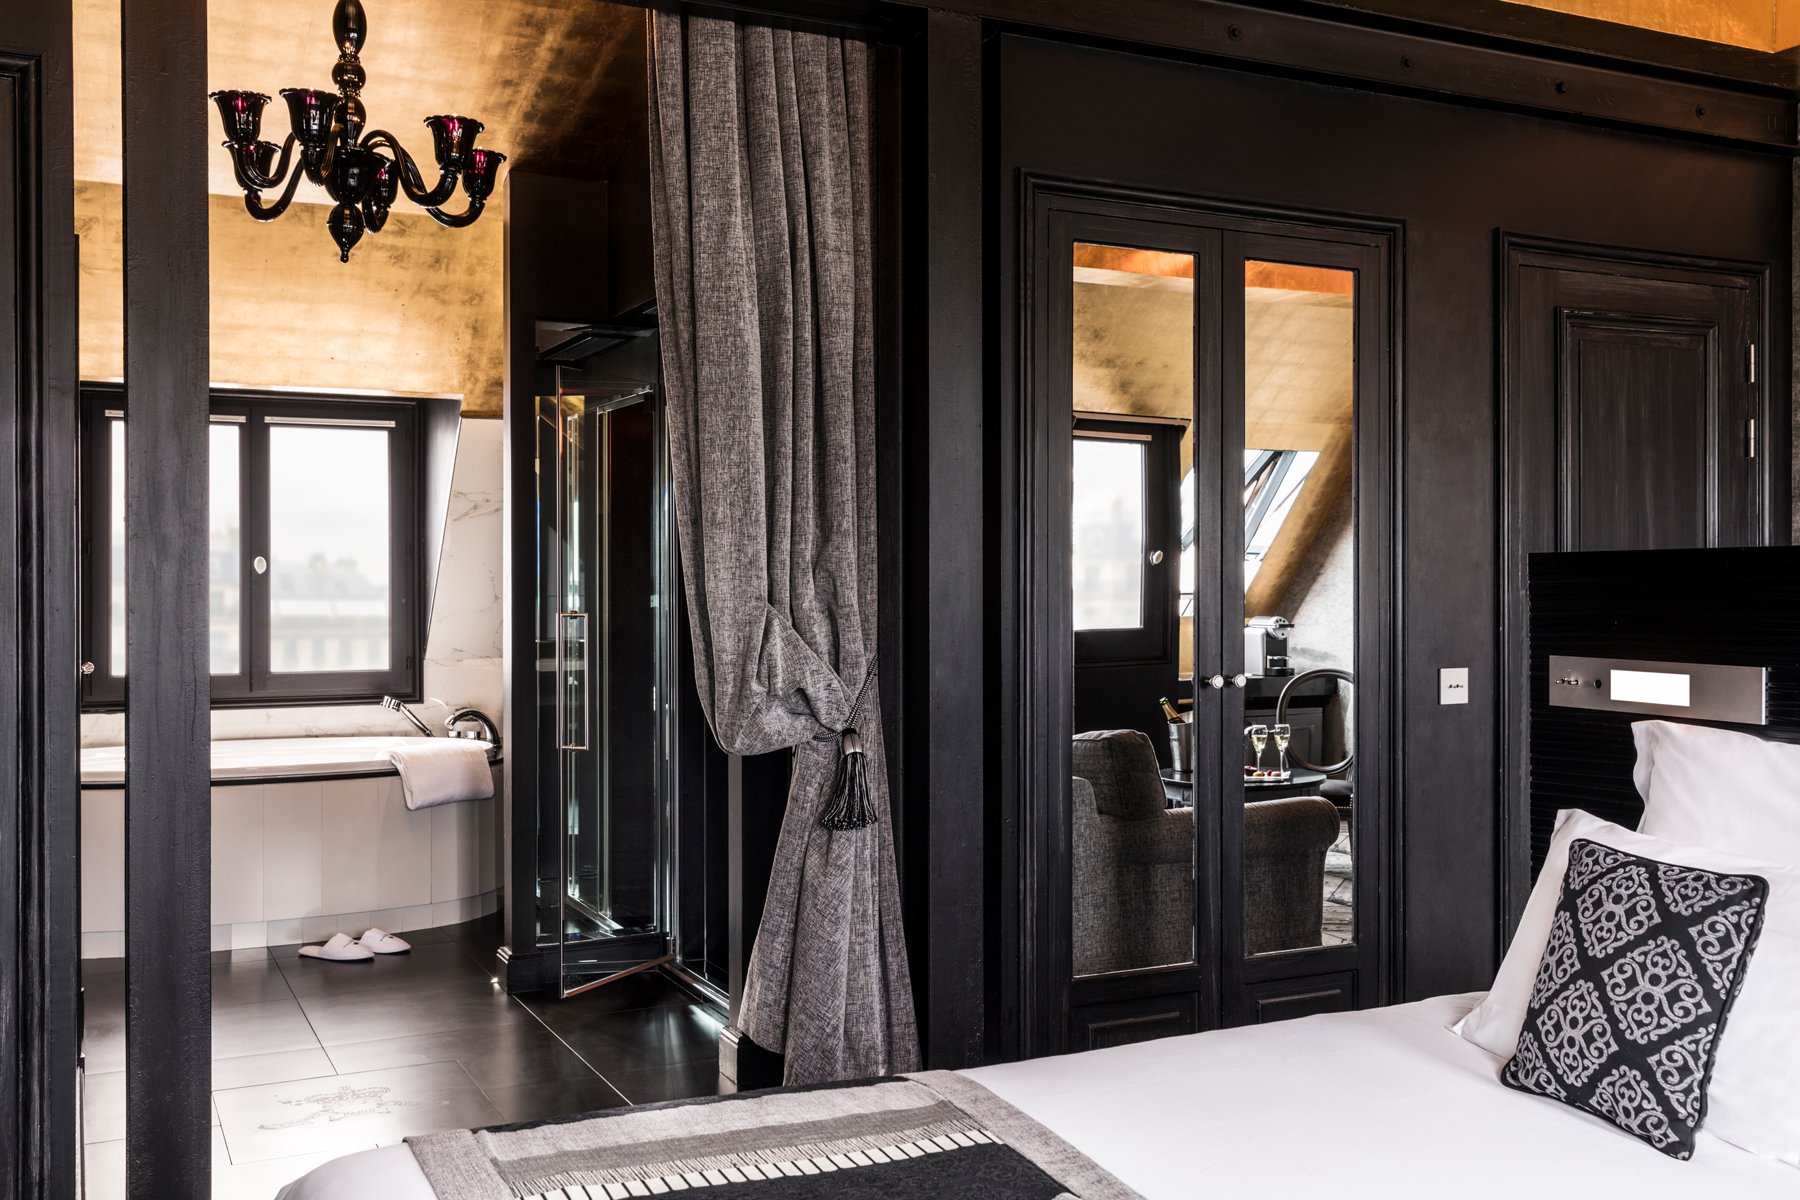 Maison Albar Hotels Le Champs-Elysées | Chambres d'hôtel avec bain à remous privatif